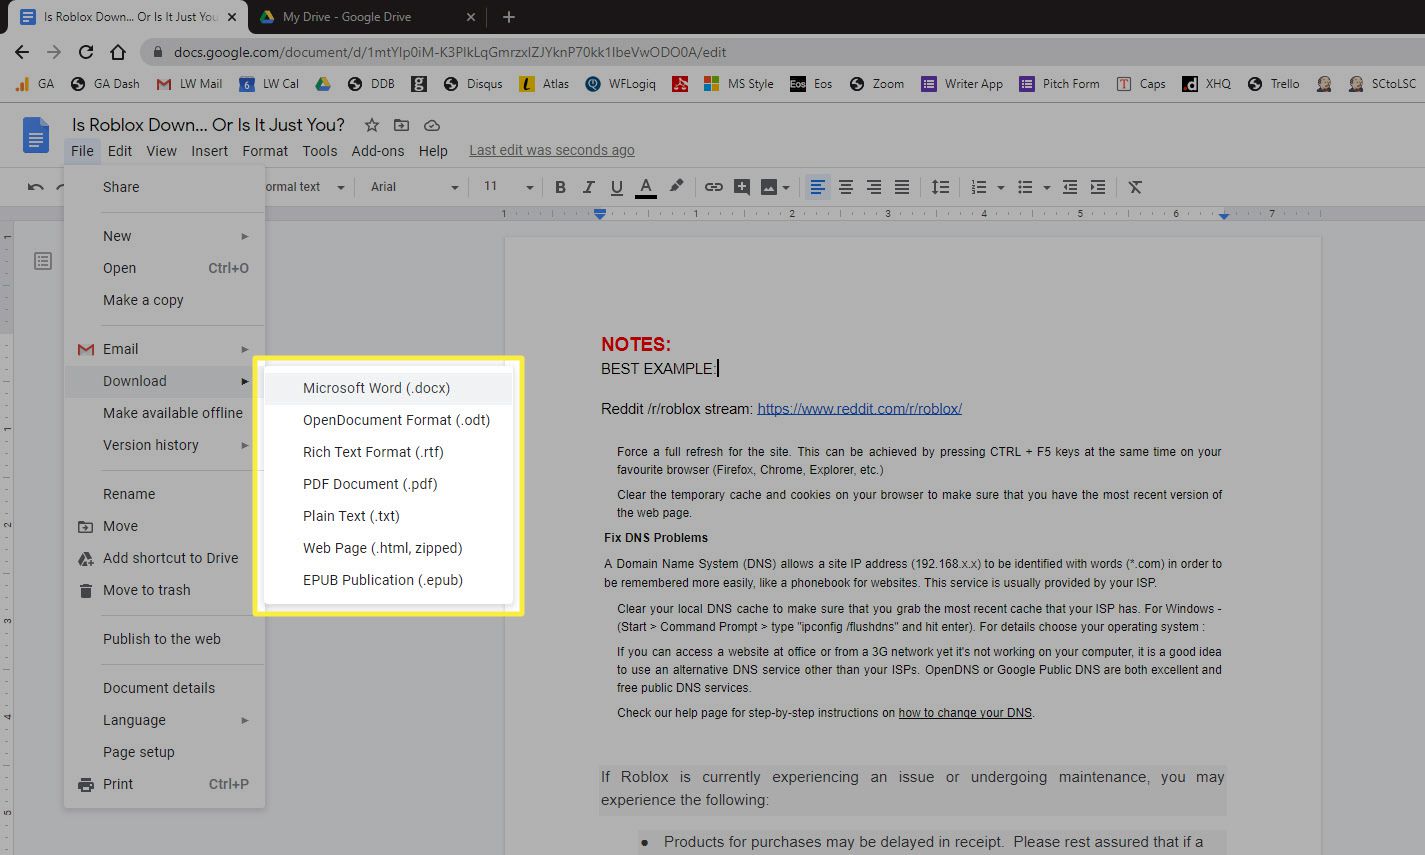 Ladda ner som Microsoft Word (.docx) menyalternativ i Google-dokumentets filmeny